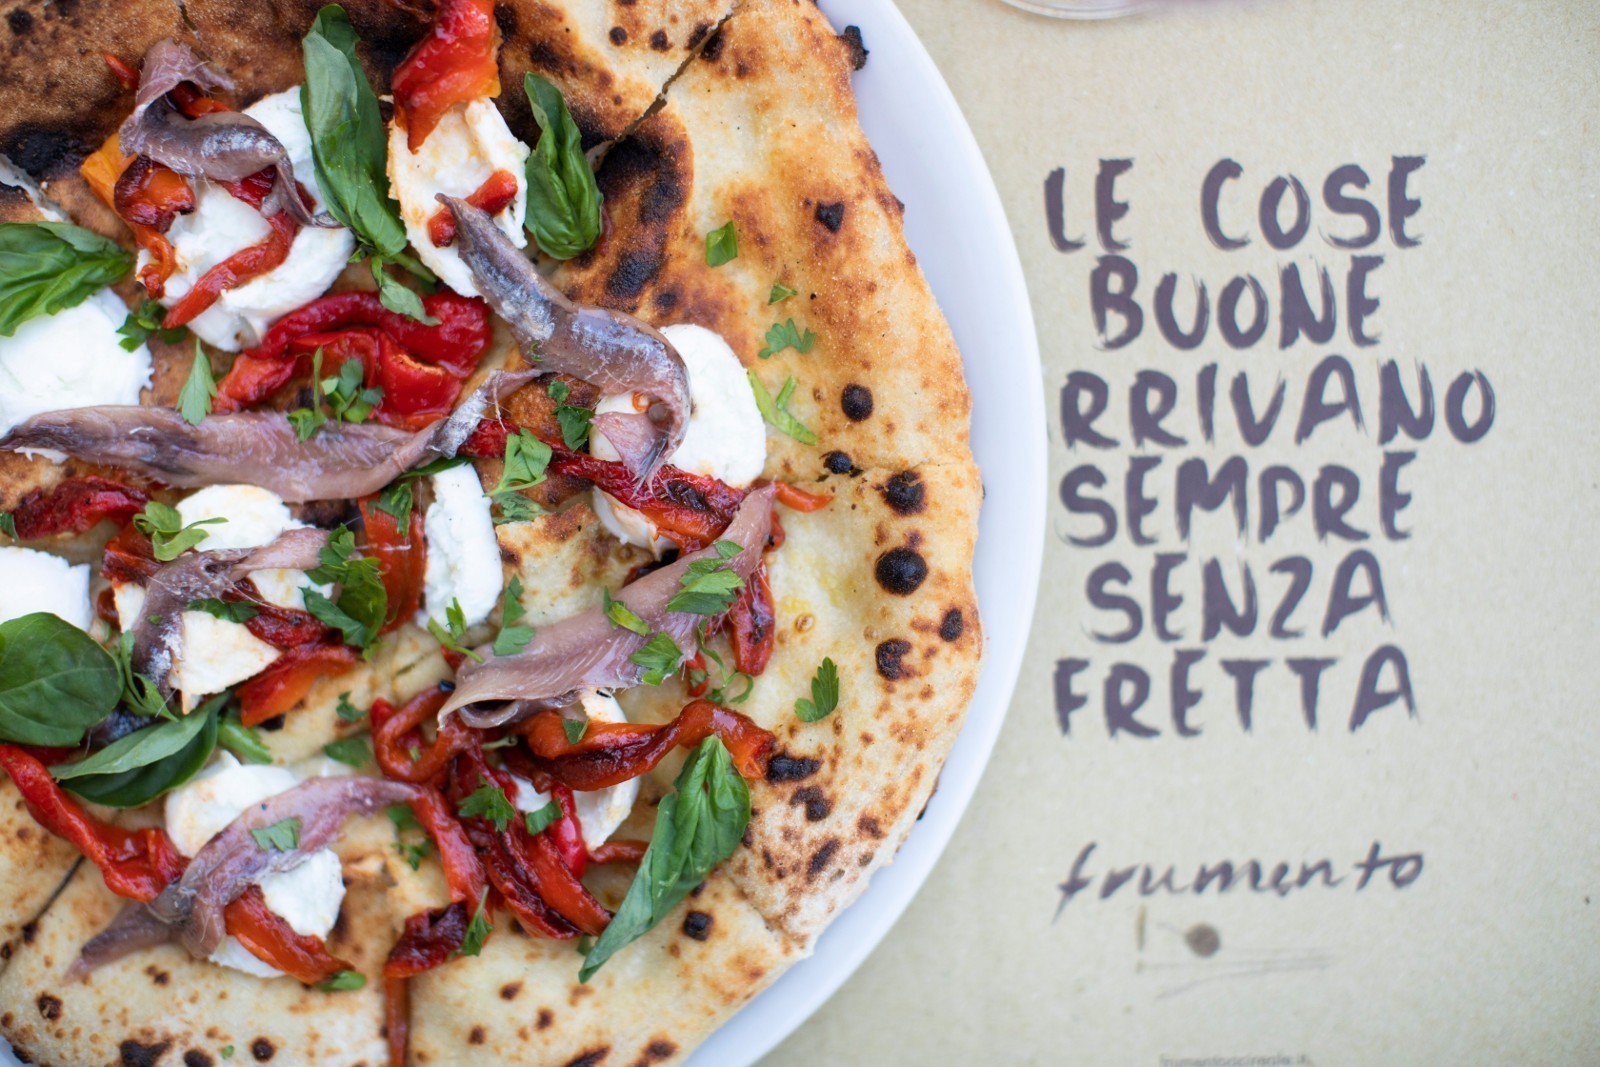 50 Top Pizza Awards: Frumento è la migliore pizzeria in Sicilia